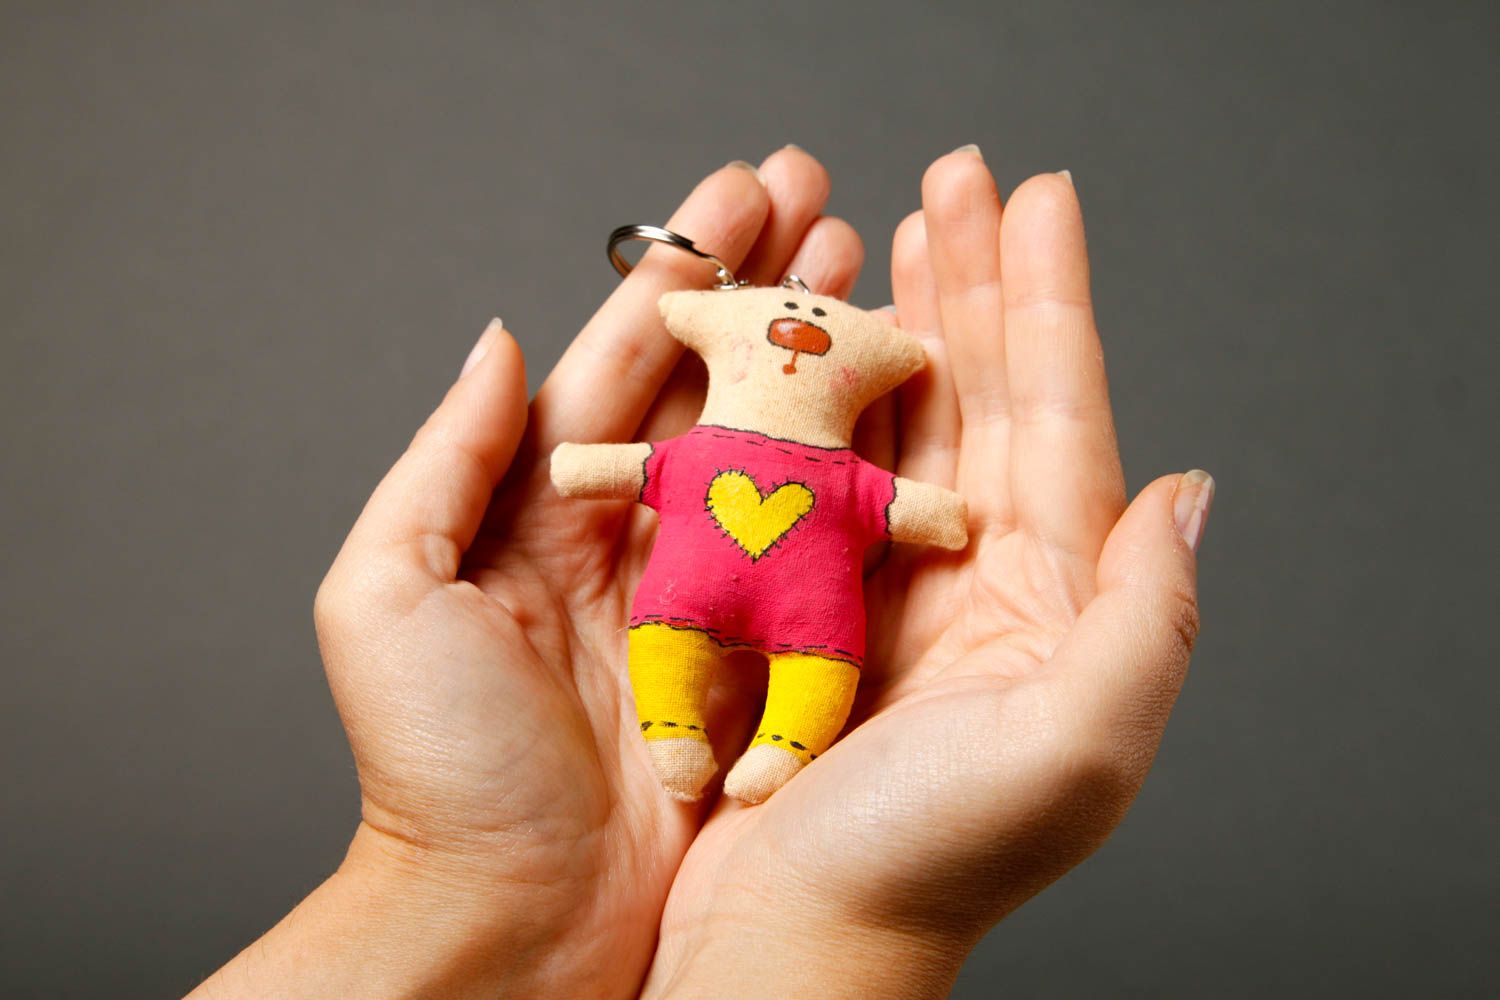 Handmade keychain designer keychain unusual souvenir gift ideas gift for kids photo 2